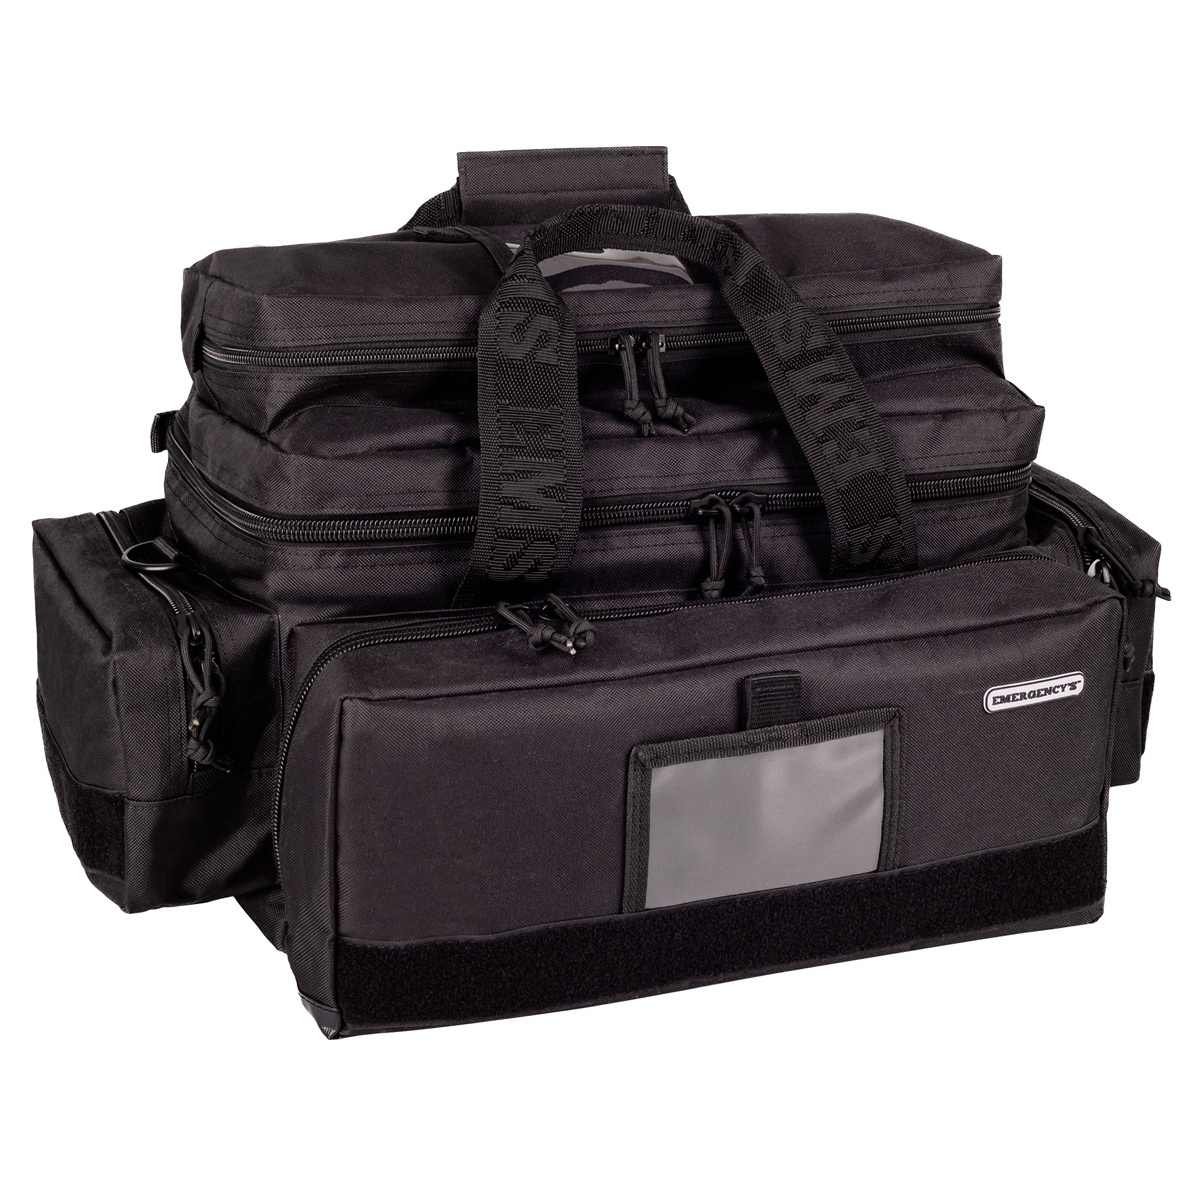 Emergency's GREAT CAPACITY Notfalltasche Schwarz - Notfalltasche mit großzügigem Platzangebot für vielfältige Einsatzbereiche. 55 x 34 x 32 cm.